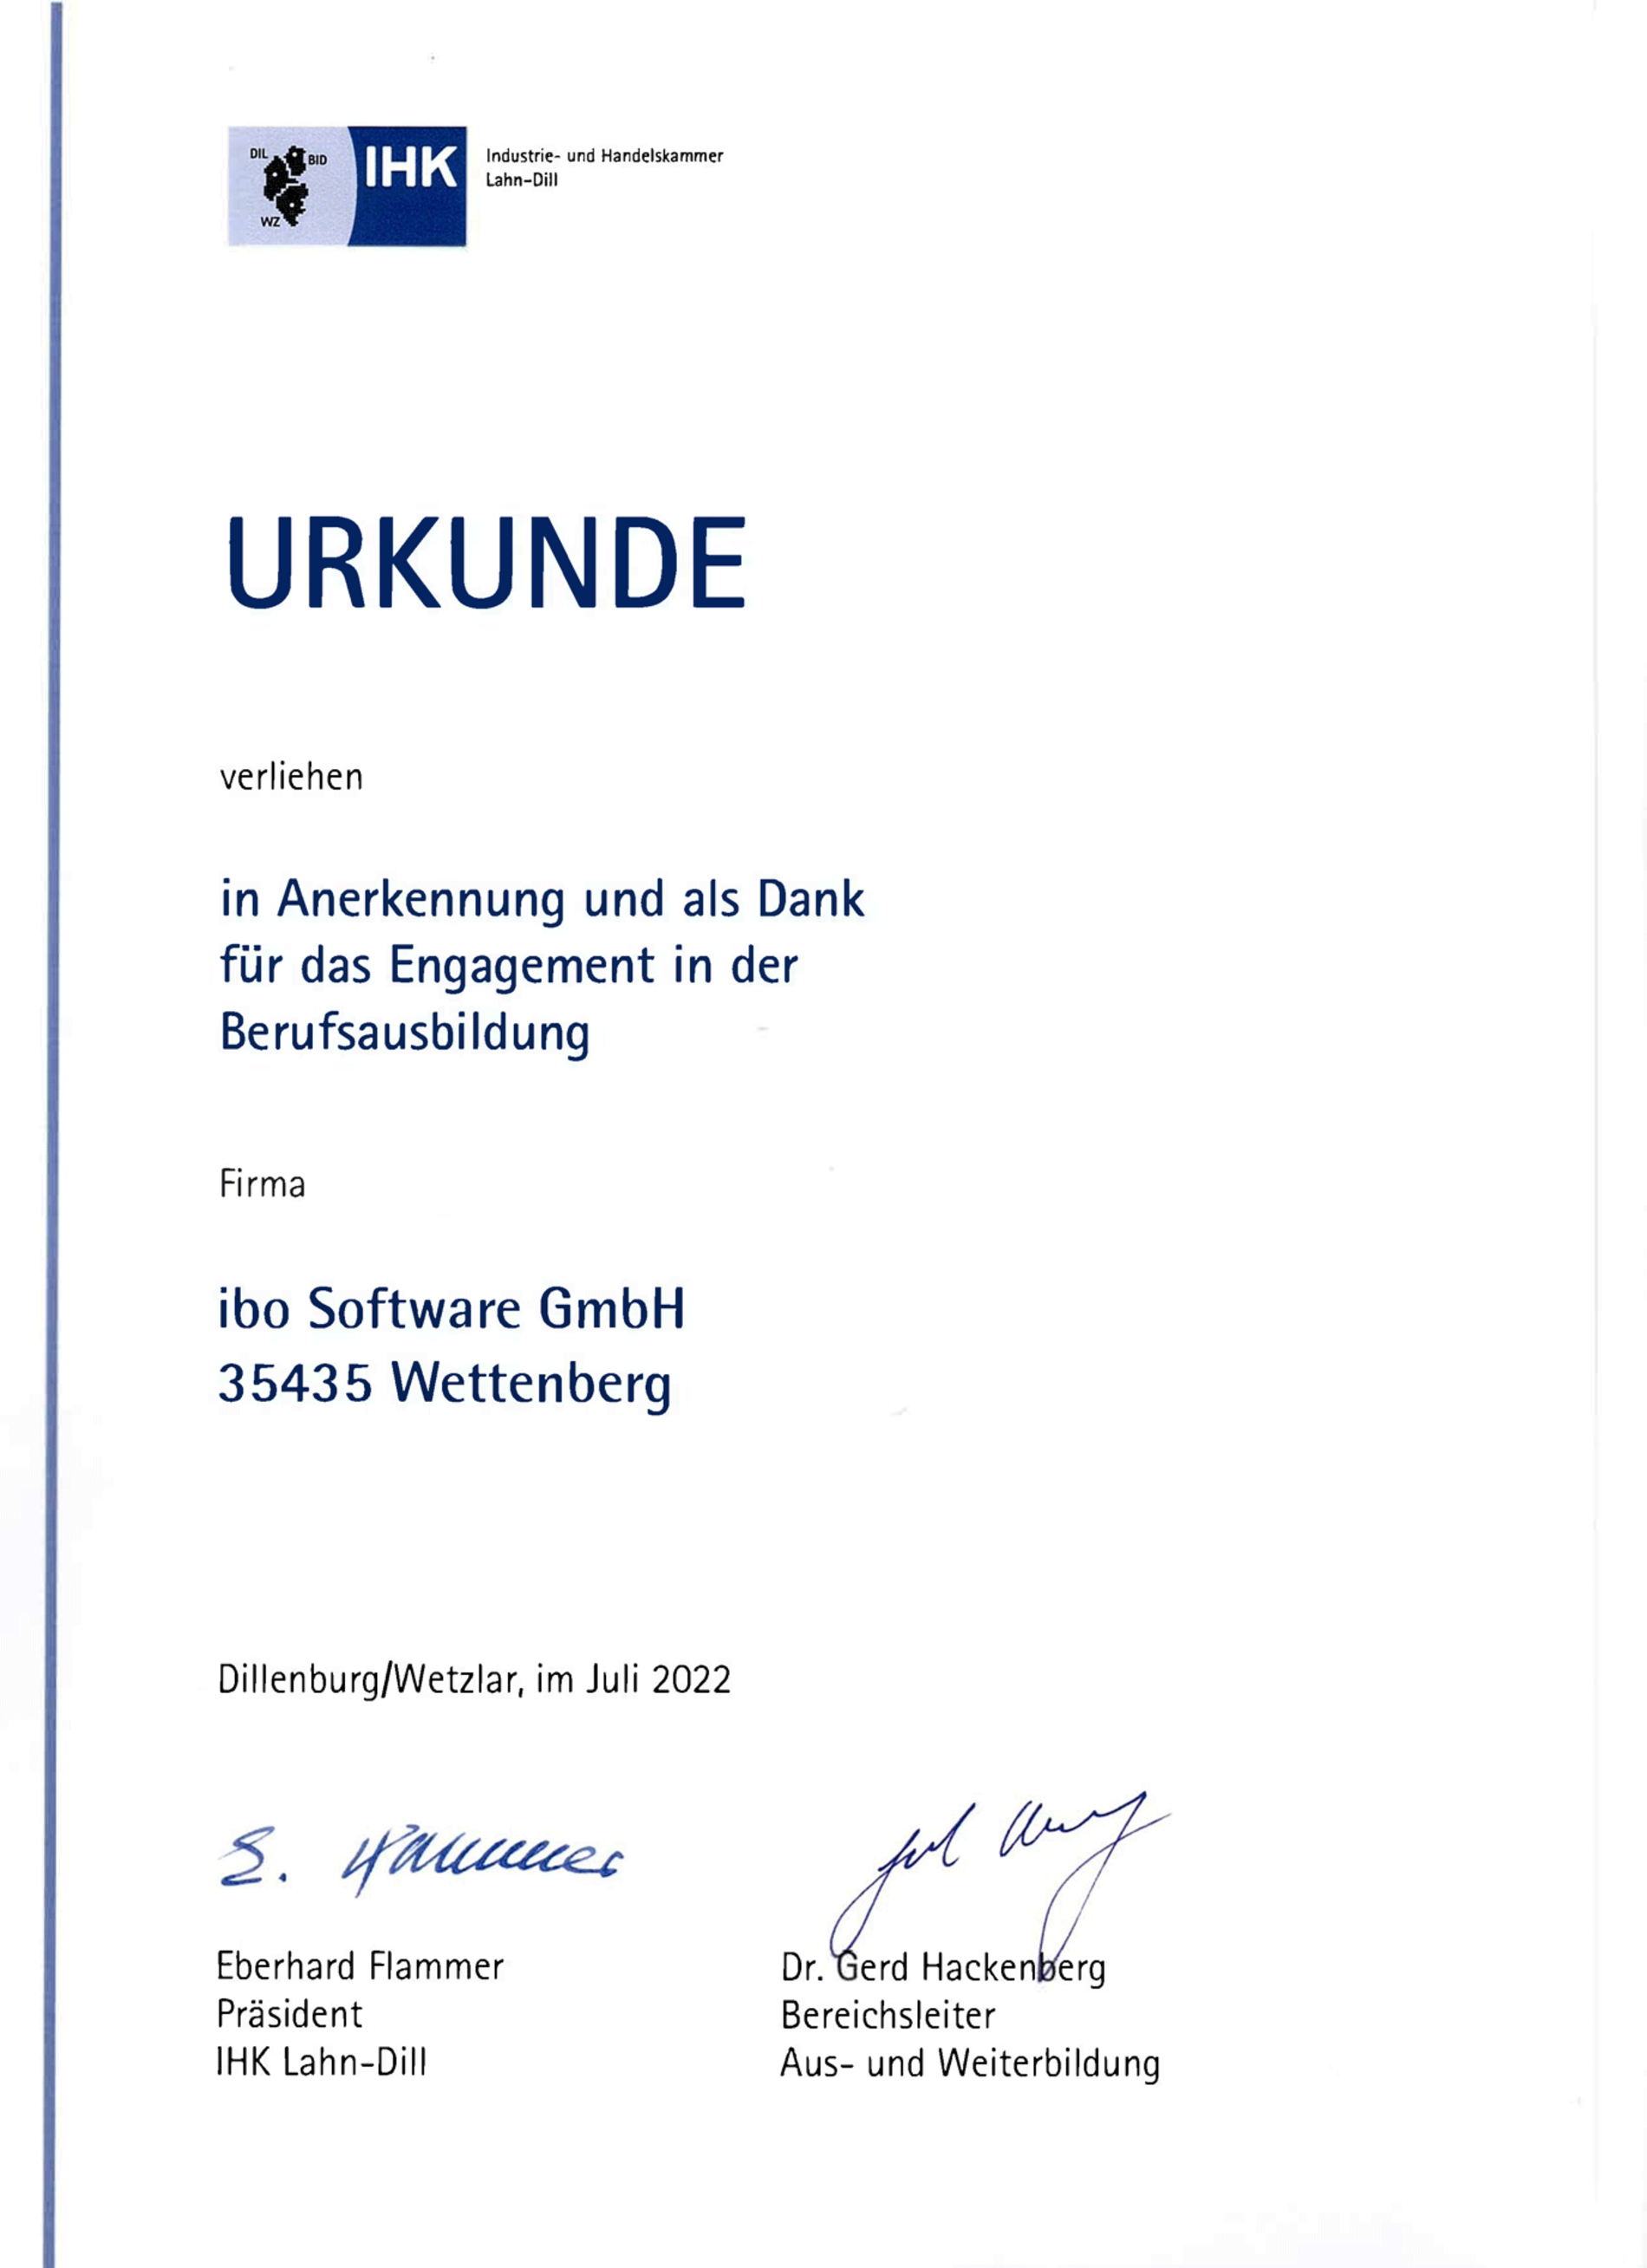 IHK Urkunde in Anerkennung und als Dank für das Engagement in der Berufsausbildung für die Firma ibo Software GmbH in 35435 Wettenberg